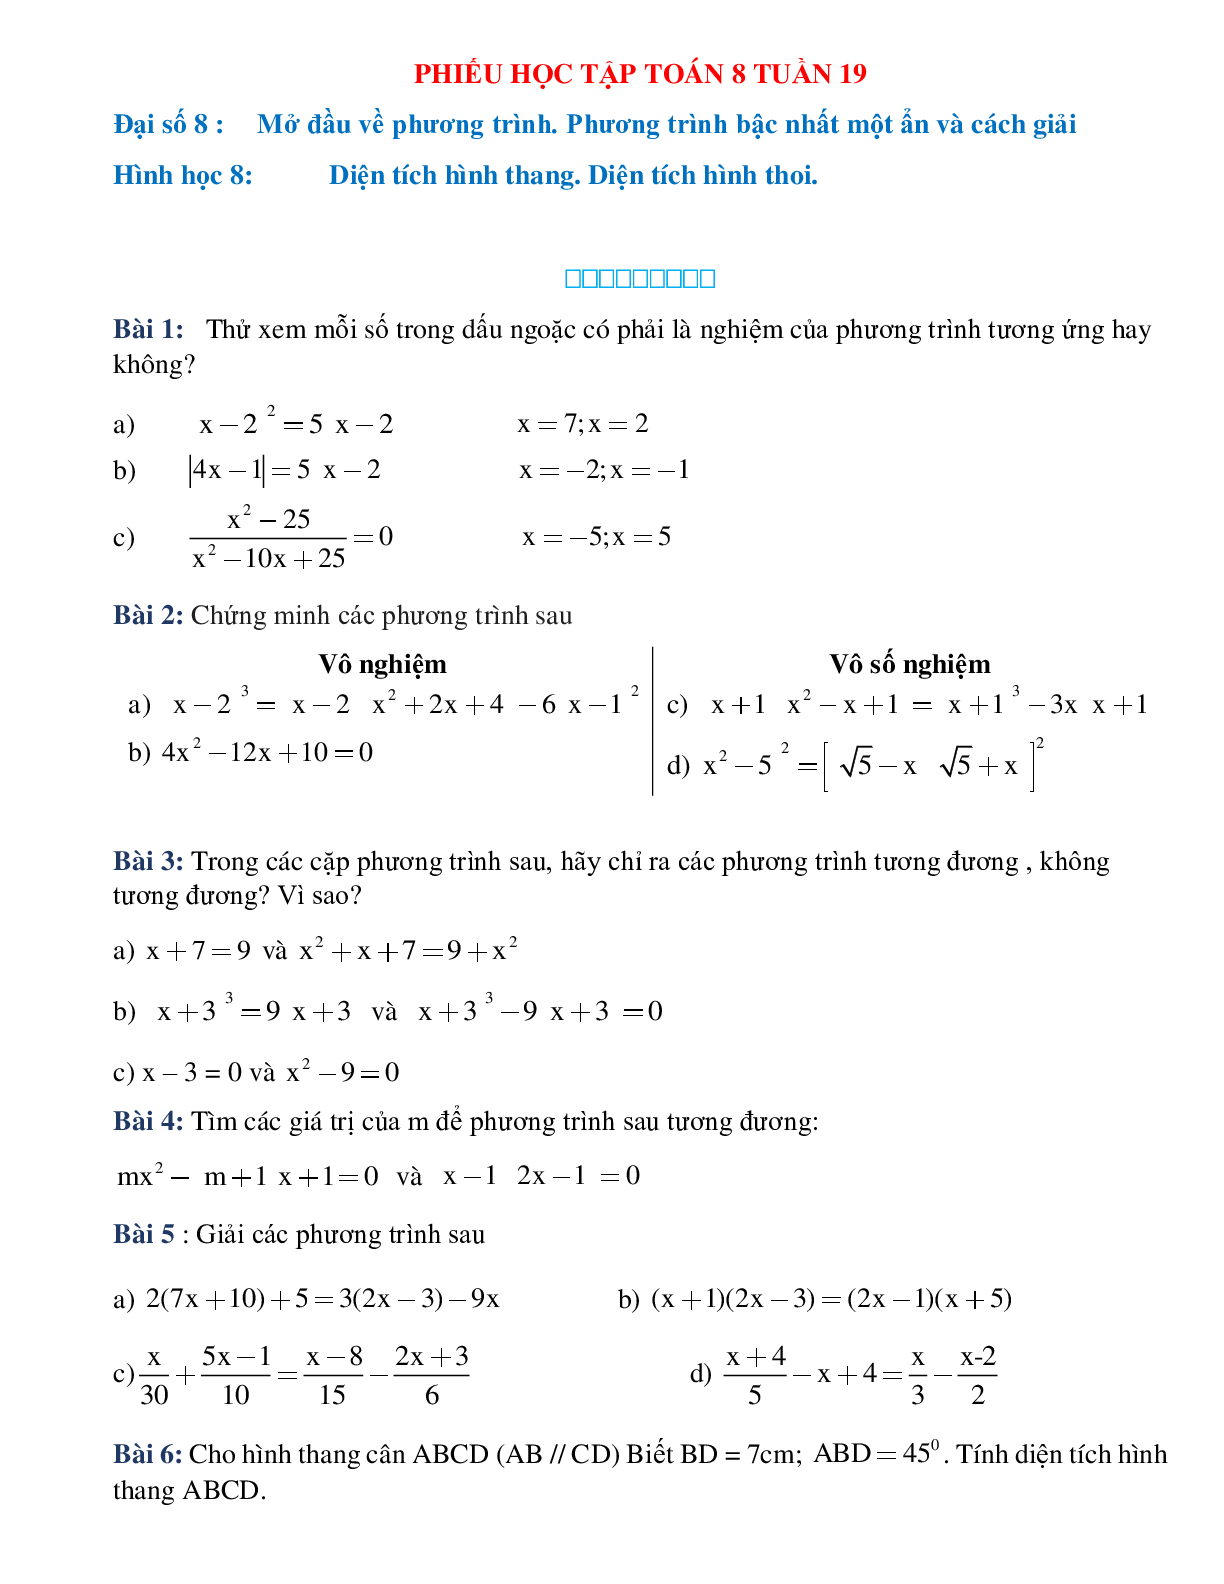 Phiếu bài tập tuần 19 - Toán 8 (trang 1)